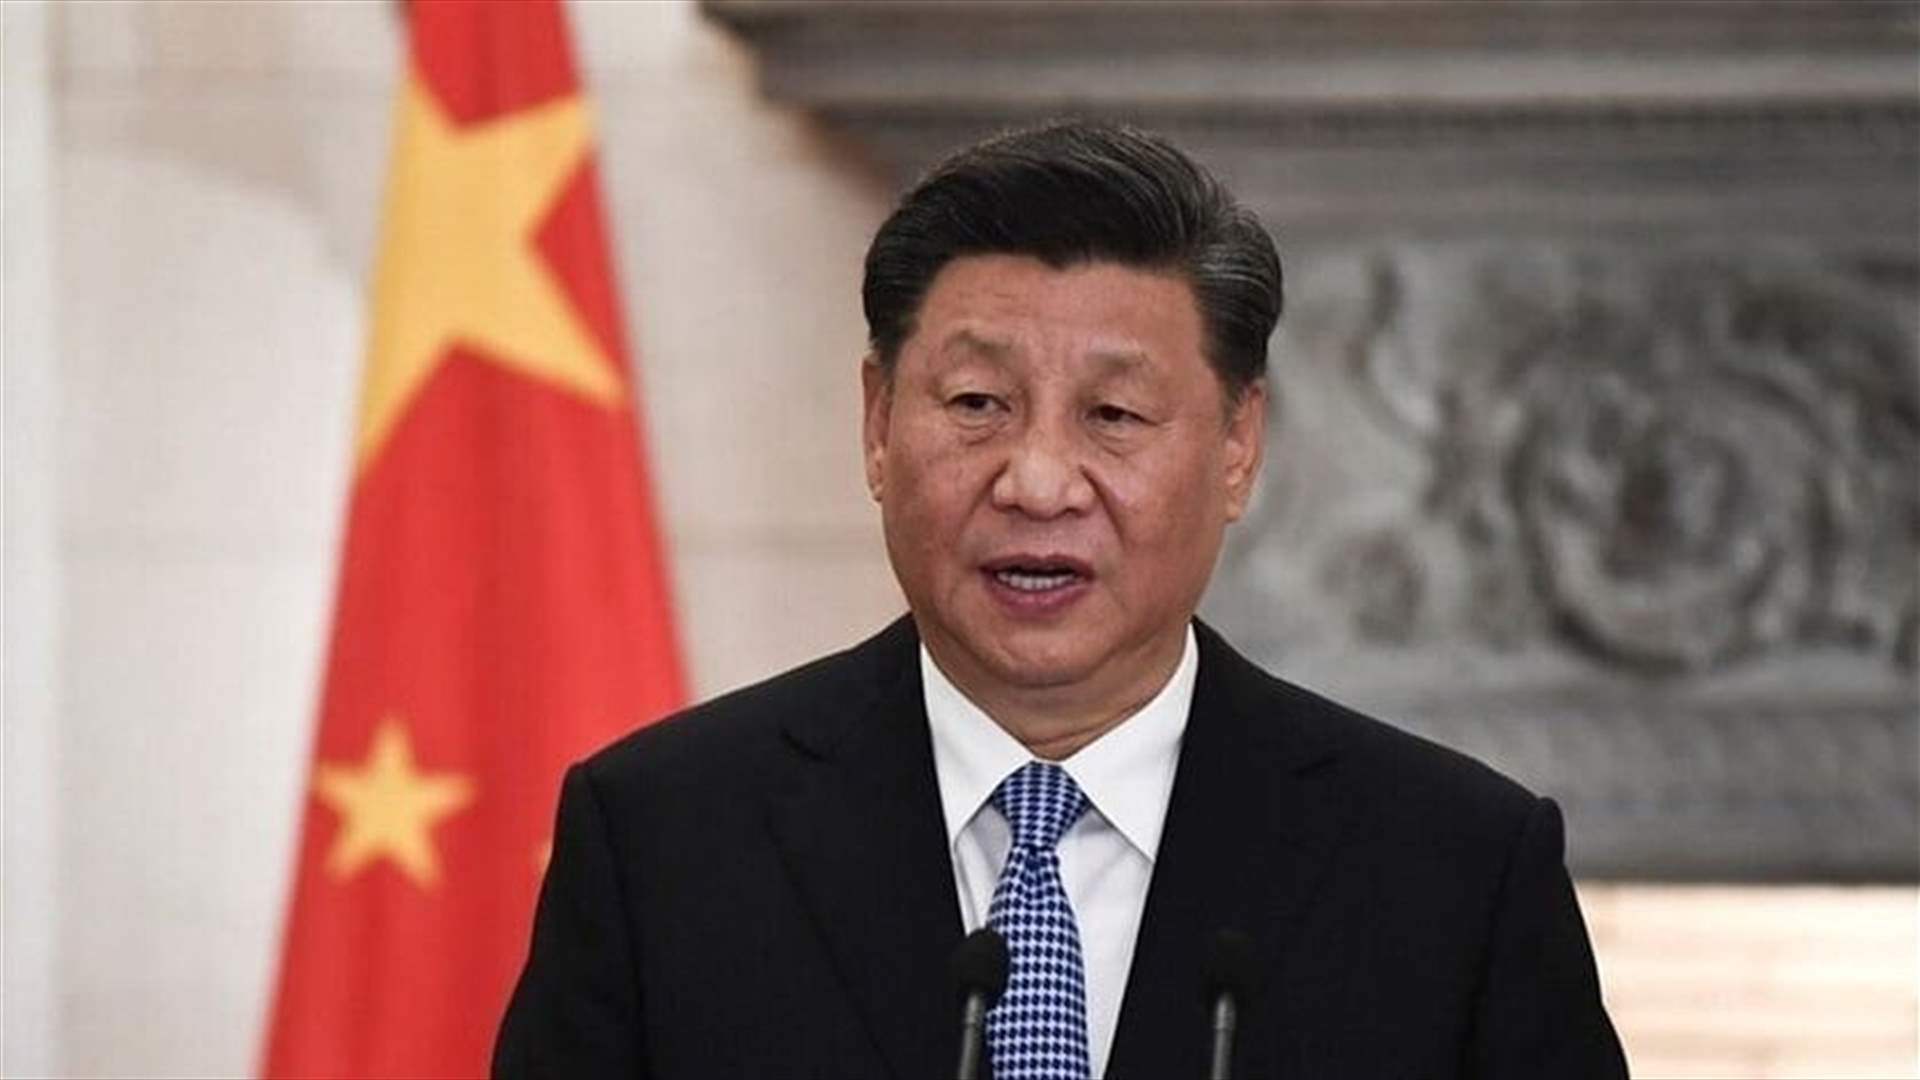 شي جيبينغ: &quot;التدخل الخارجي&quot; لن يمنع إعادة توحيد الصين وتايوان 